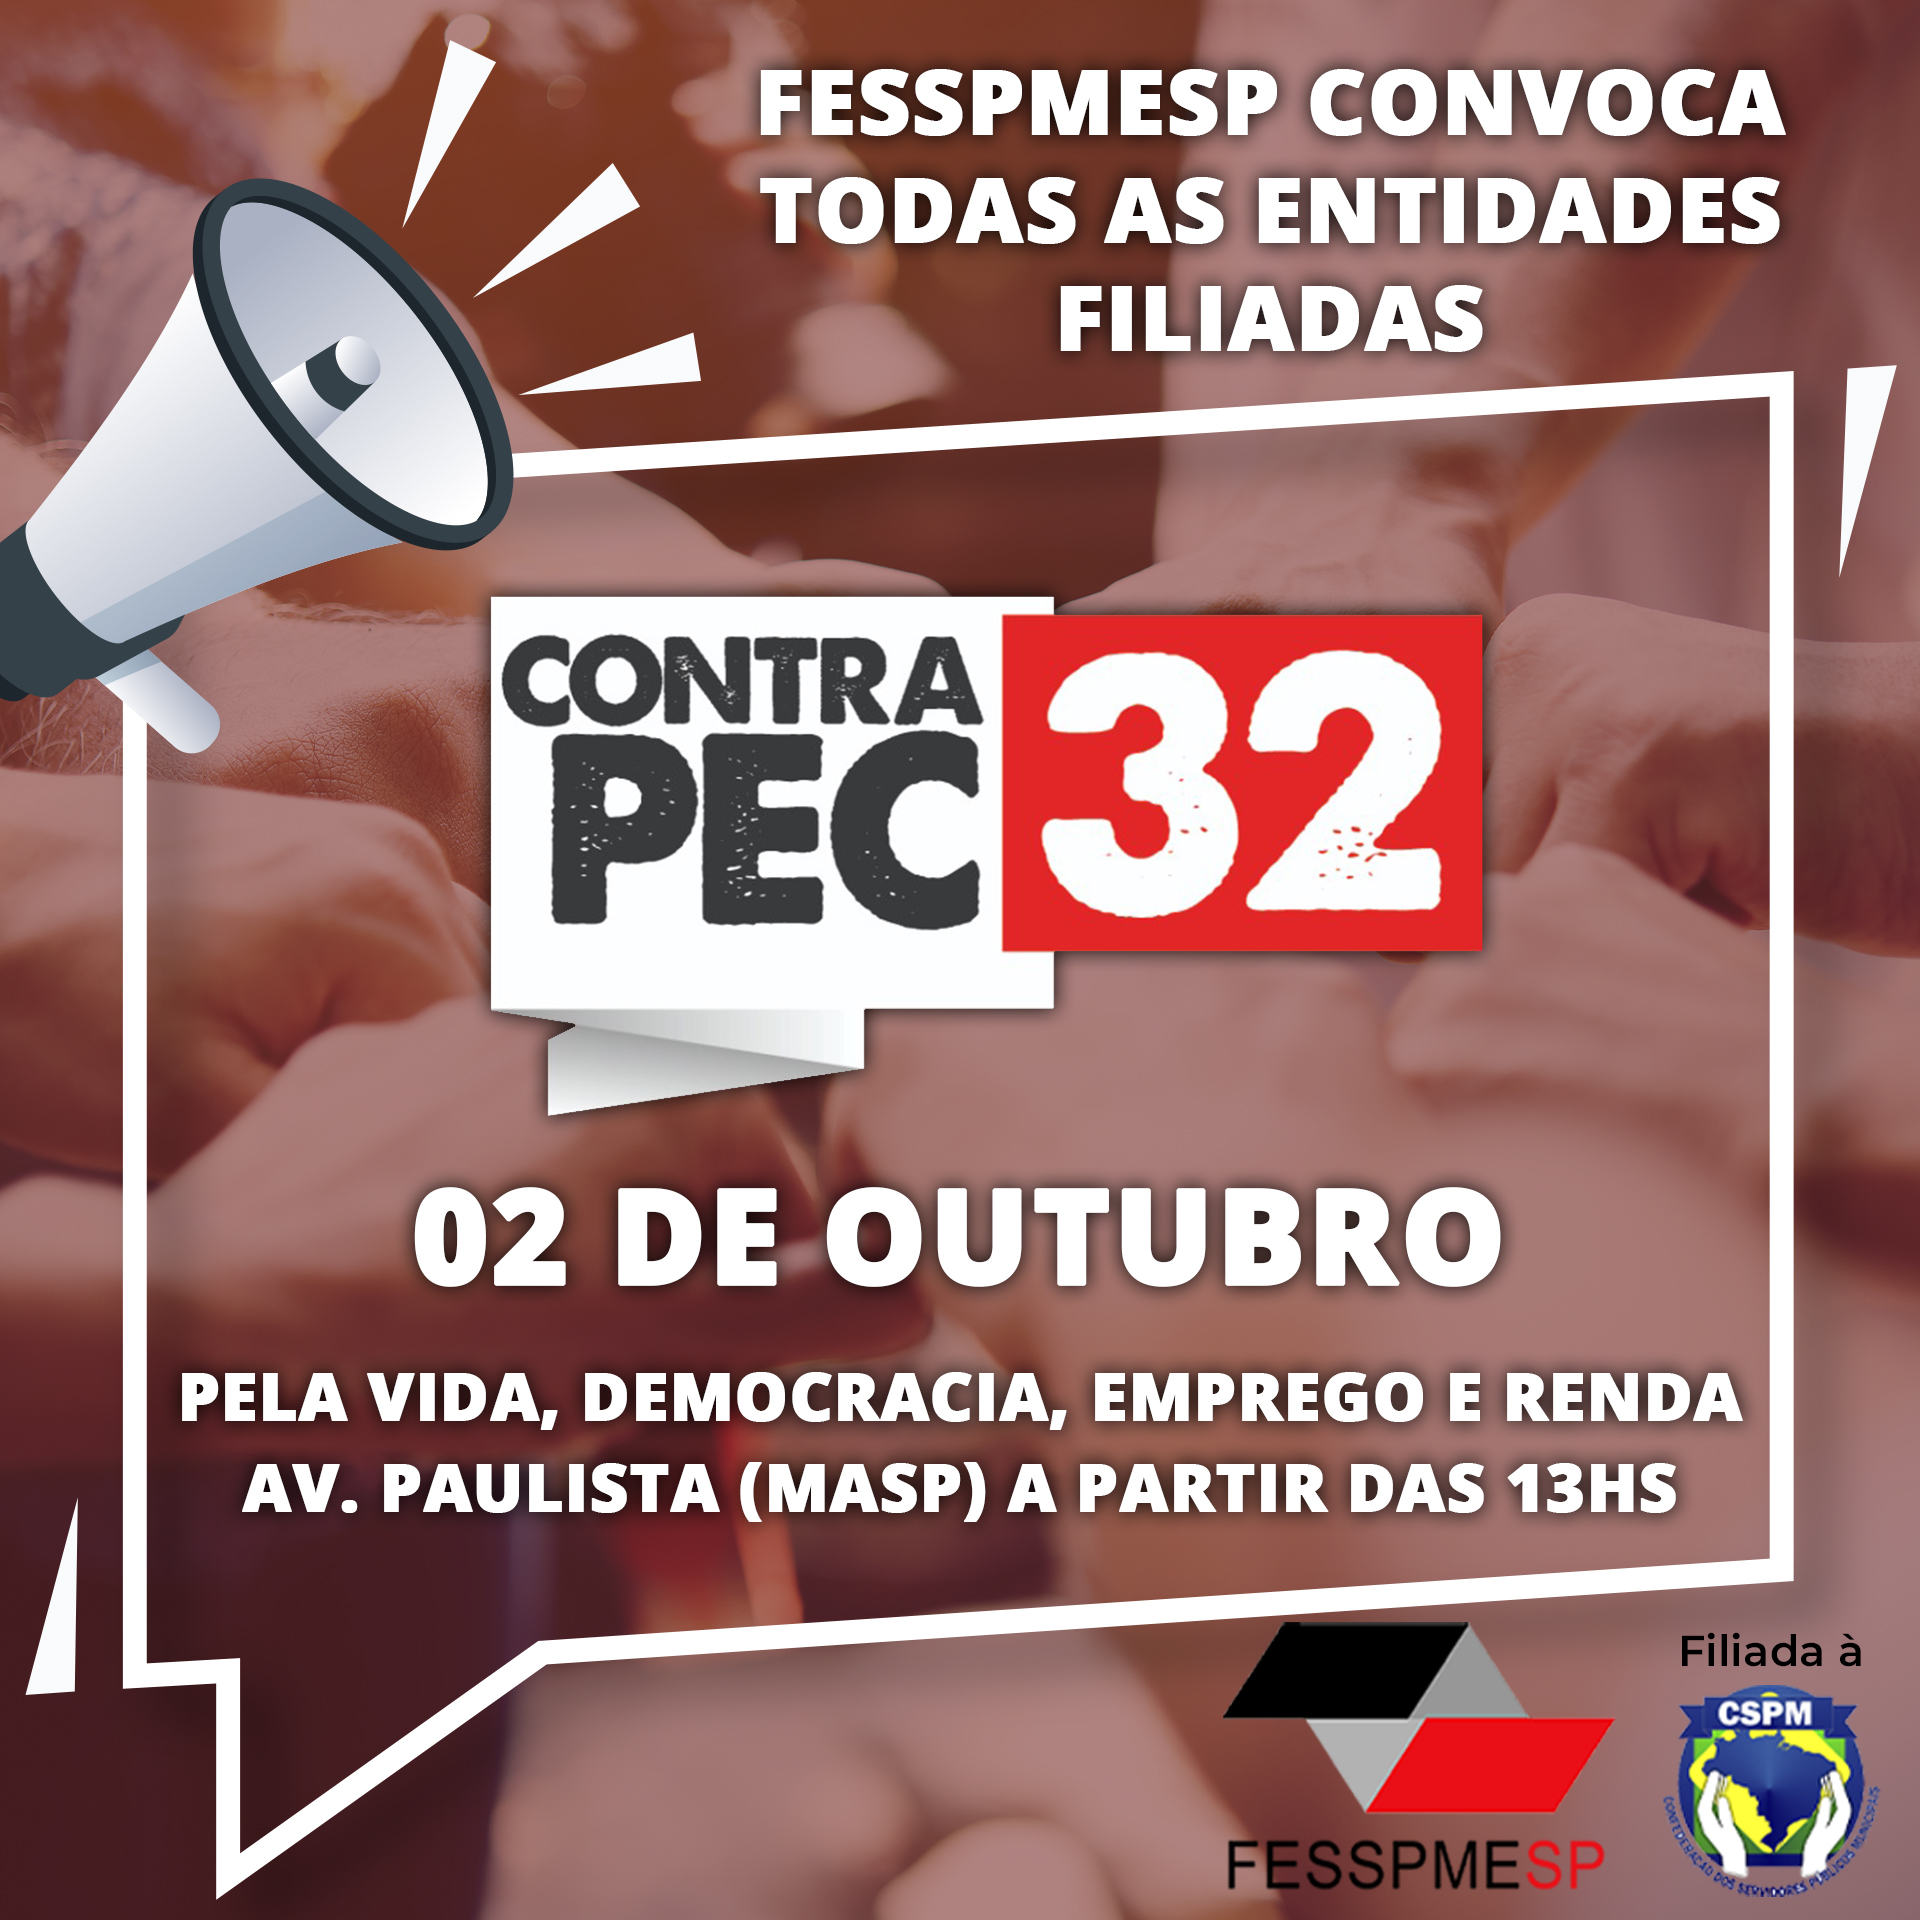 FESSPMESP, Centrais Sindicais e Movimentos Sociais convocam ato contra a PEC 32/20 em todo o País